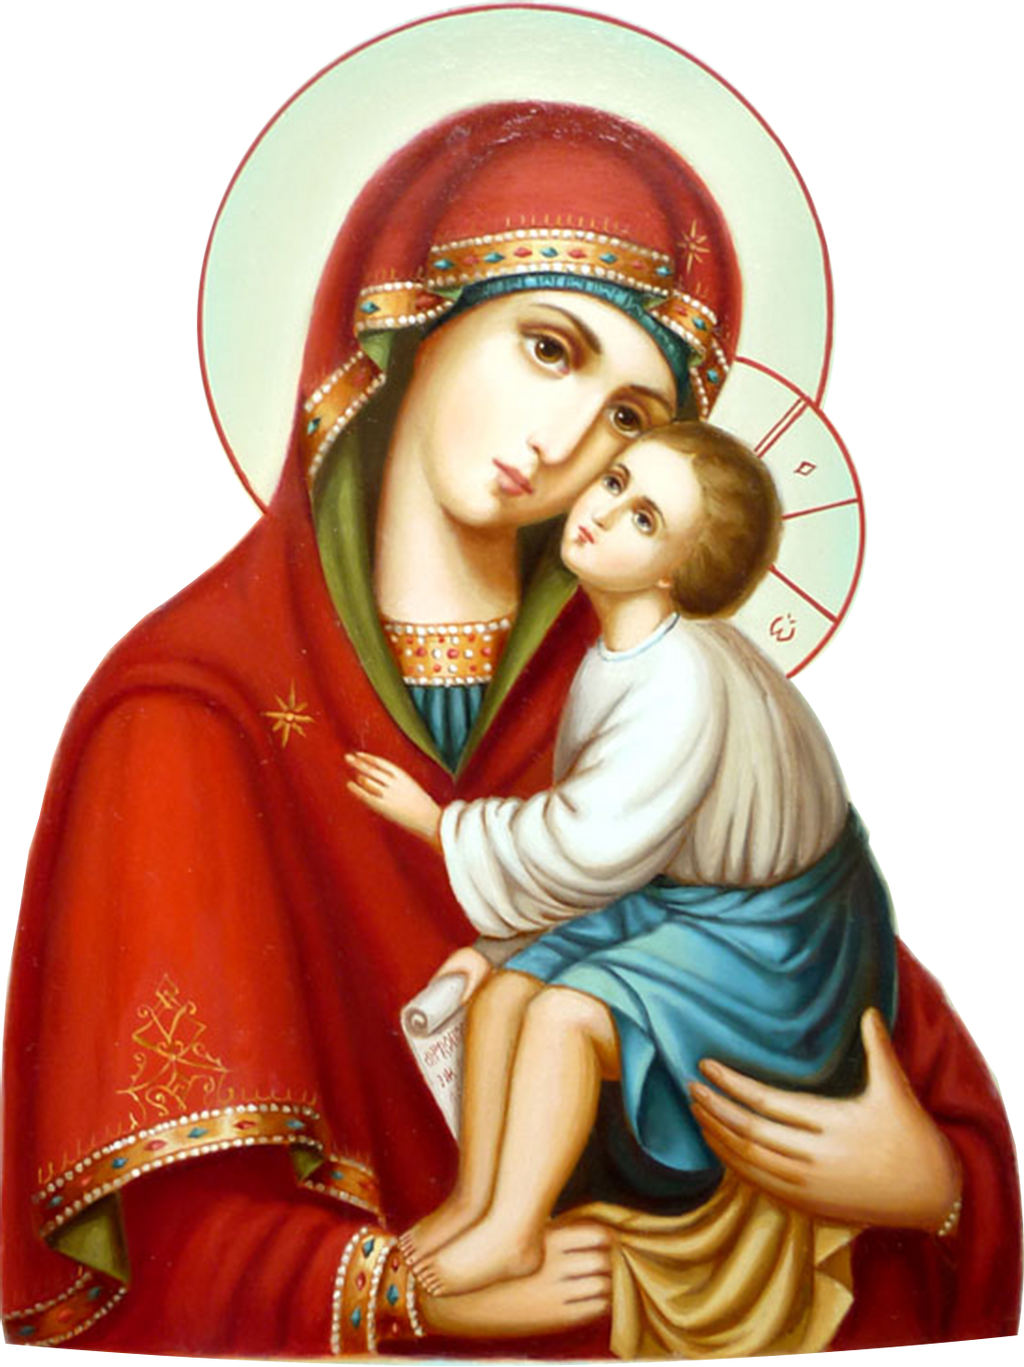 Икона Пресвятой Богородицы Марии. Икона Пресвятой Девы Марии матери Христа. Матерь благородная